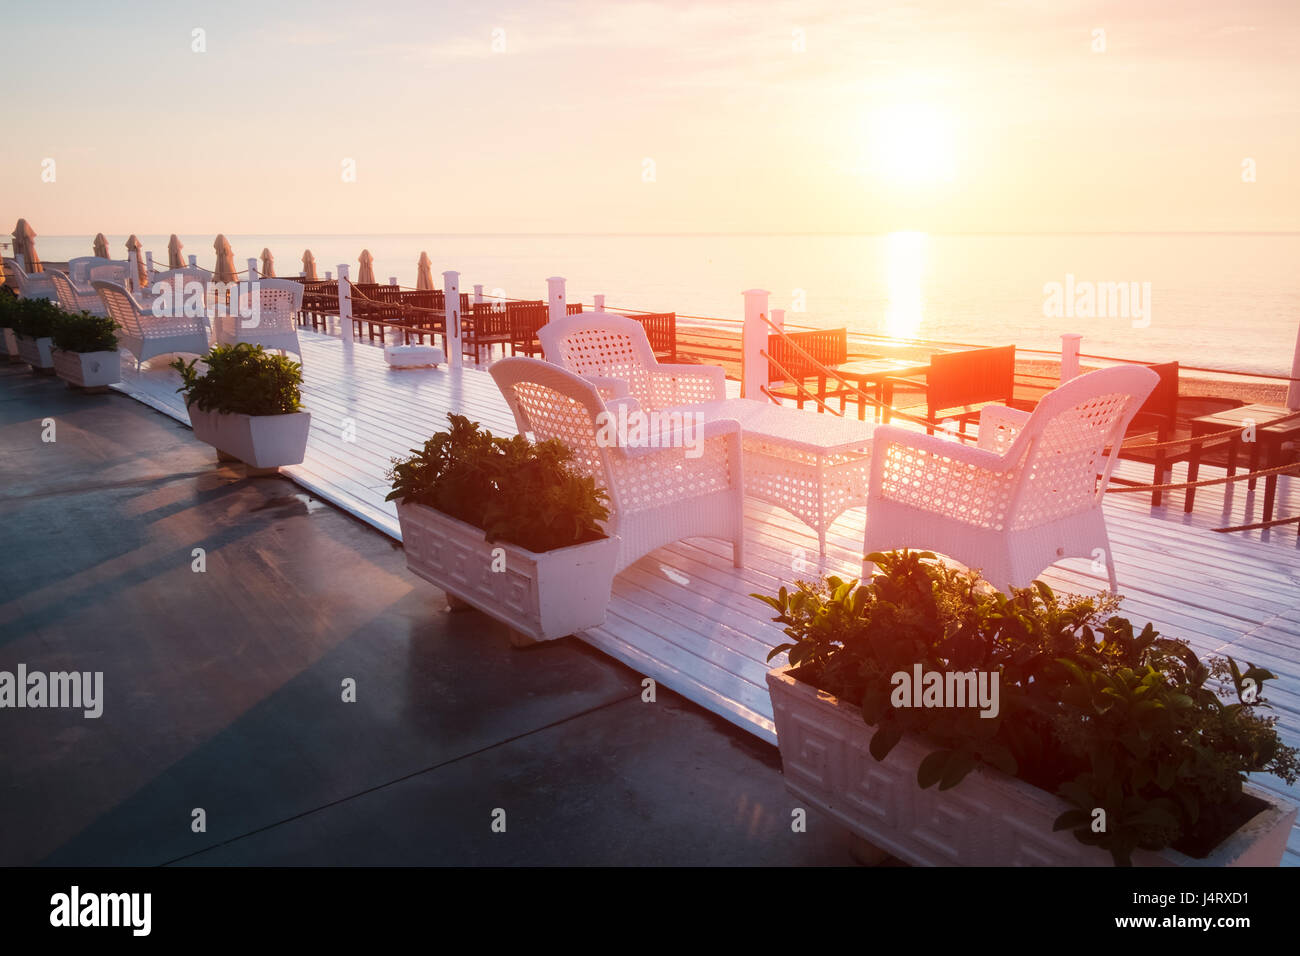 Sommer-Restaurant am Strand. Atemberaubenden Blick auf das Mittelmeer. Weiße Holzterrasse und geflochtene Möbel Stockfoto